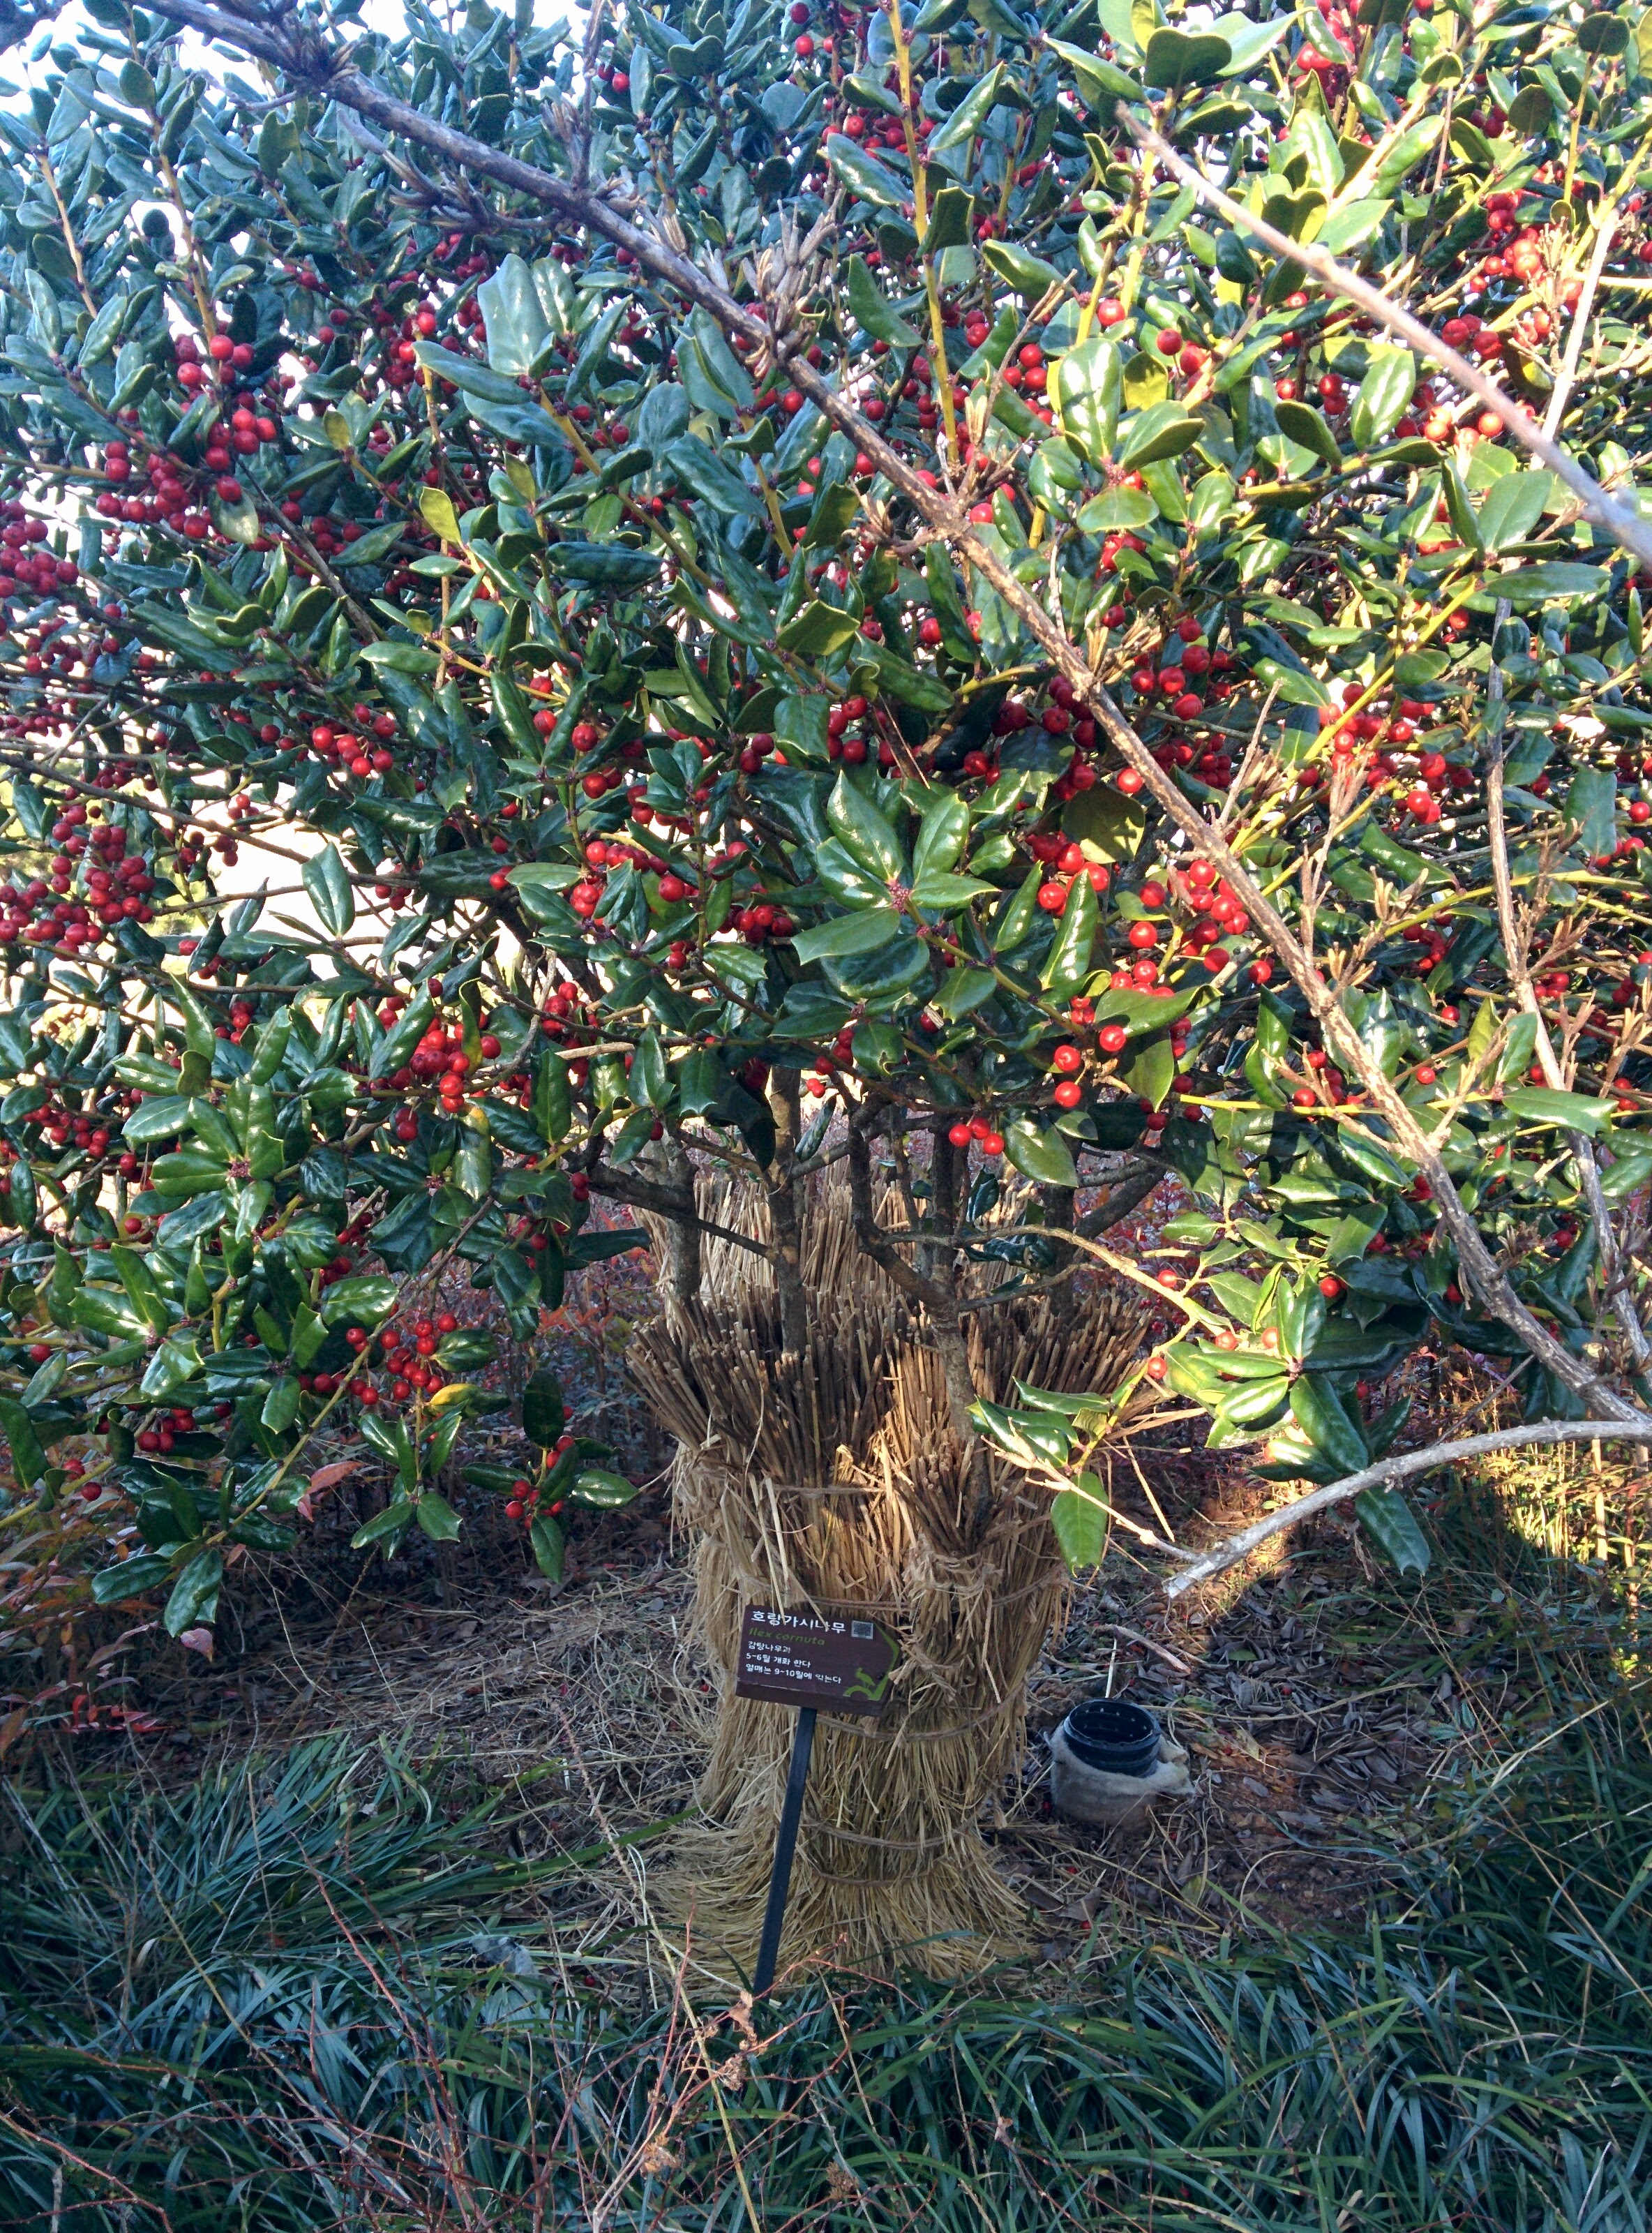 IMG_20151228_143134.jpg 붉은색 열매를 잔뜩 매단 호랑가시나무